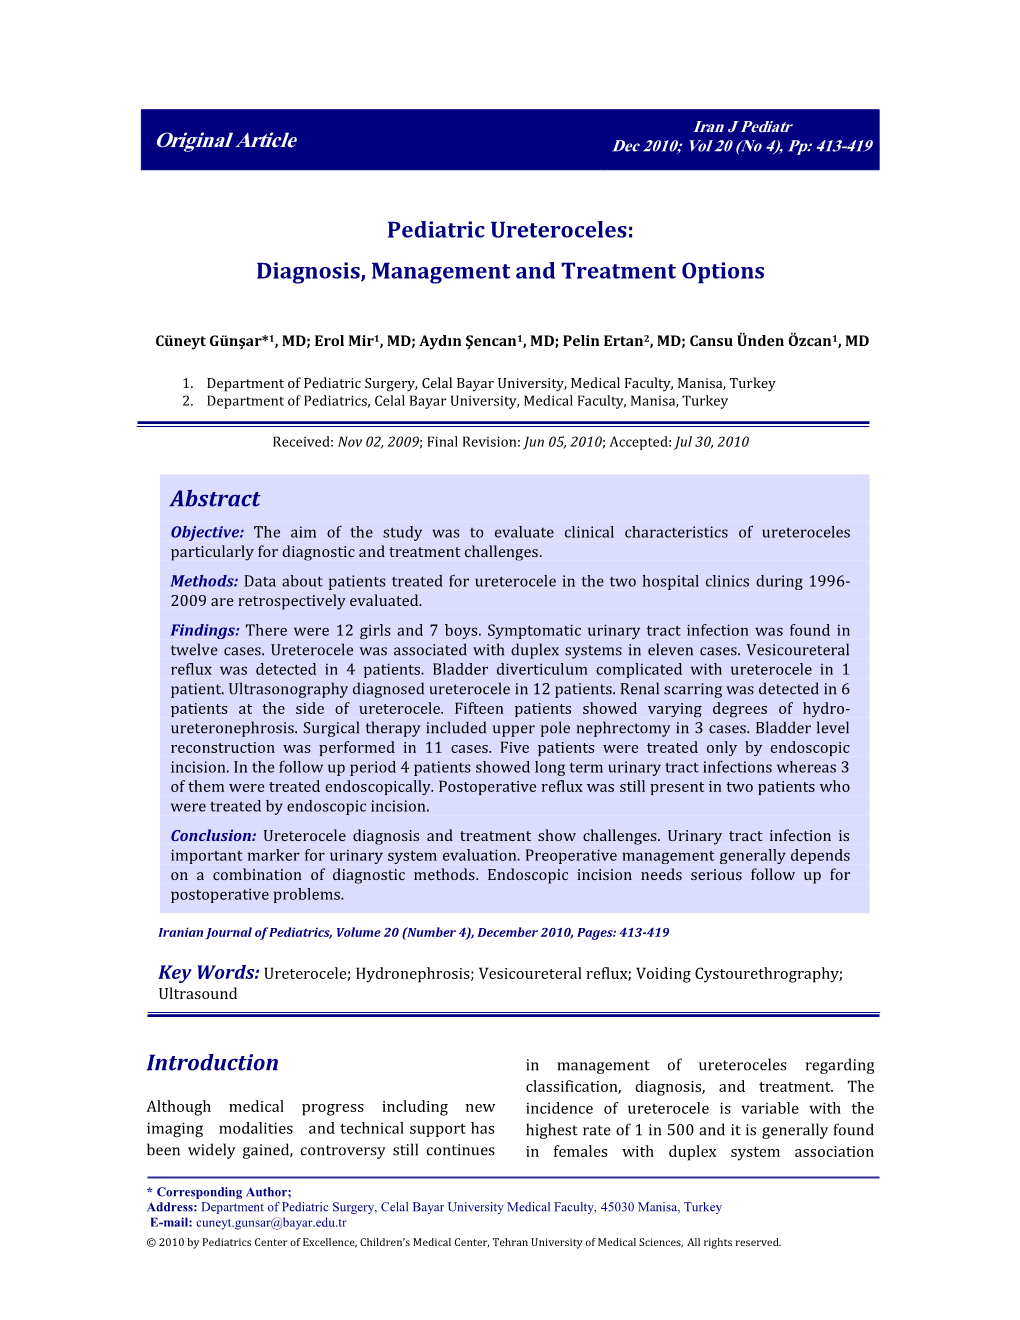 Pediatric Ureteroceles: Diagnosis, Management and Treatment Options